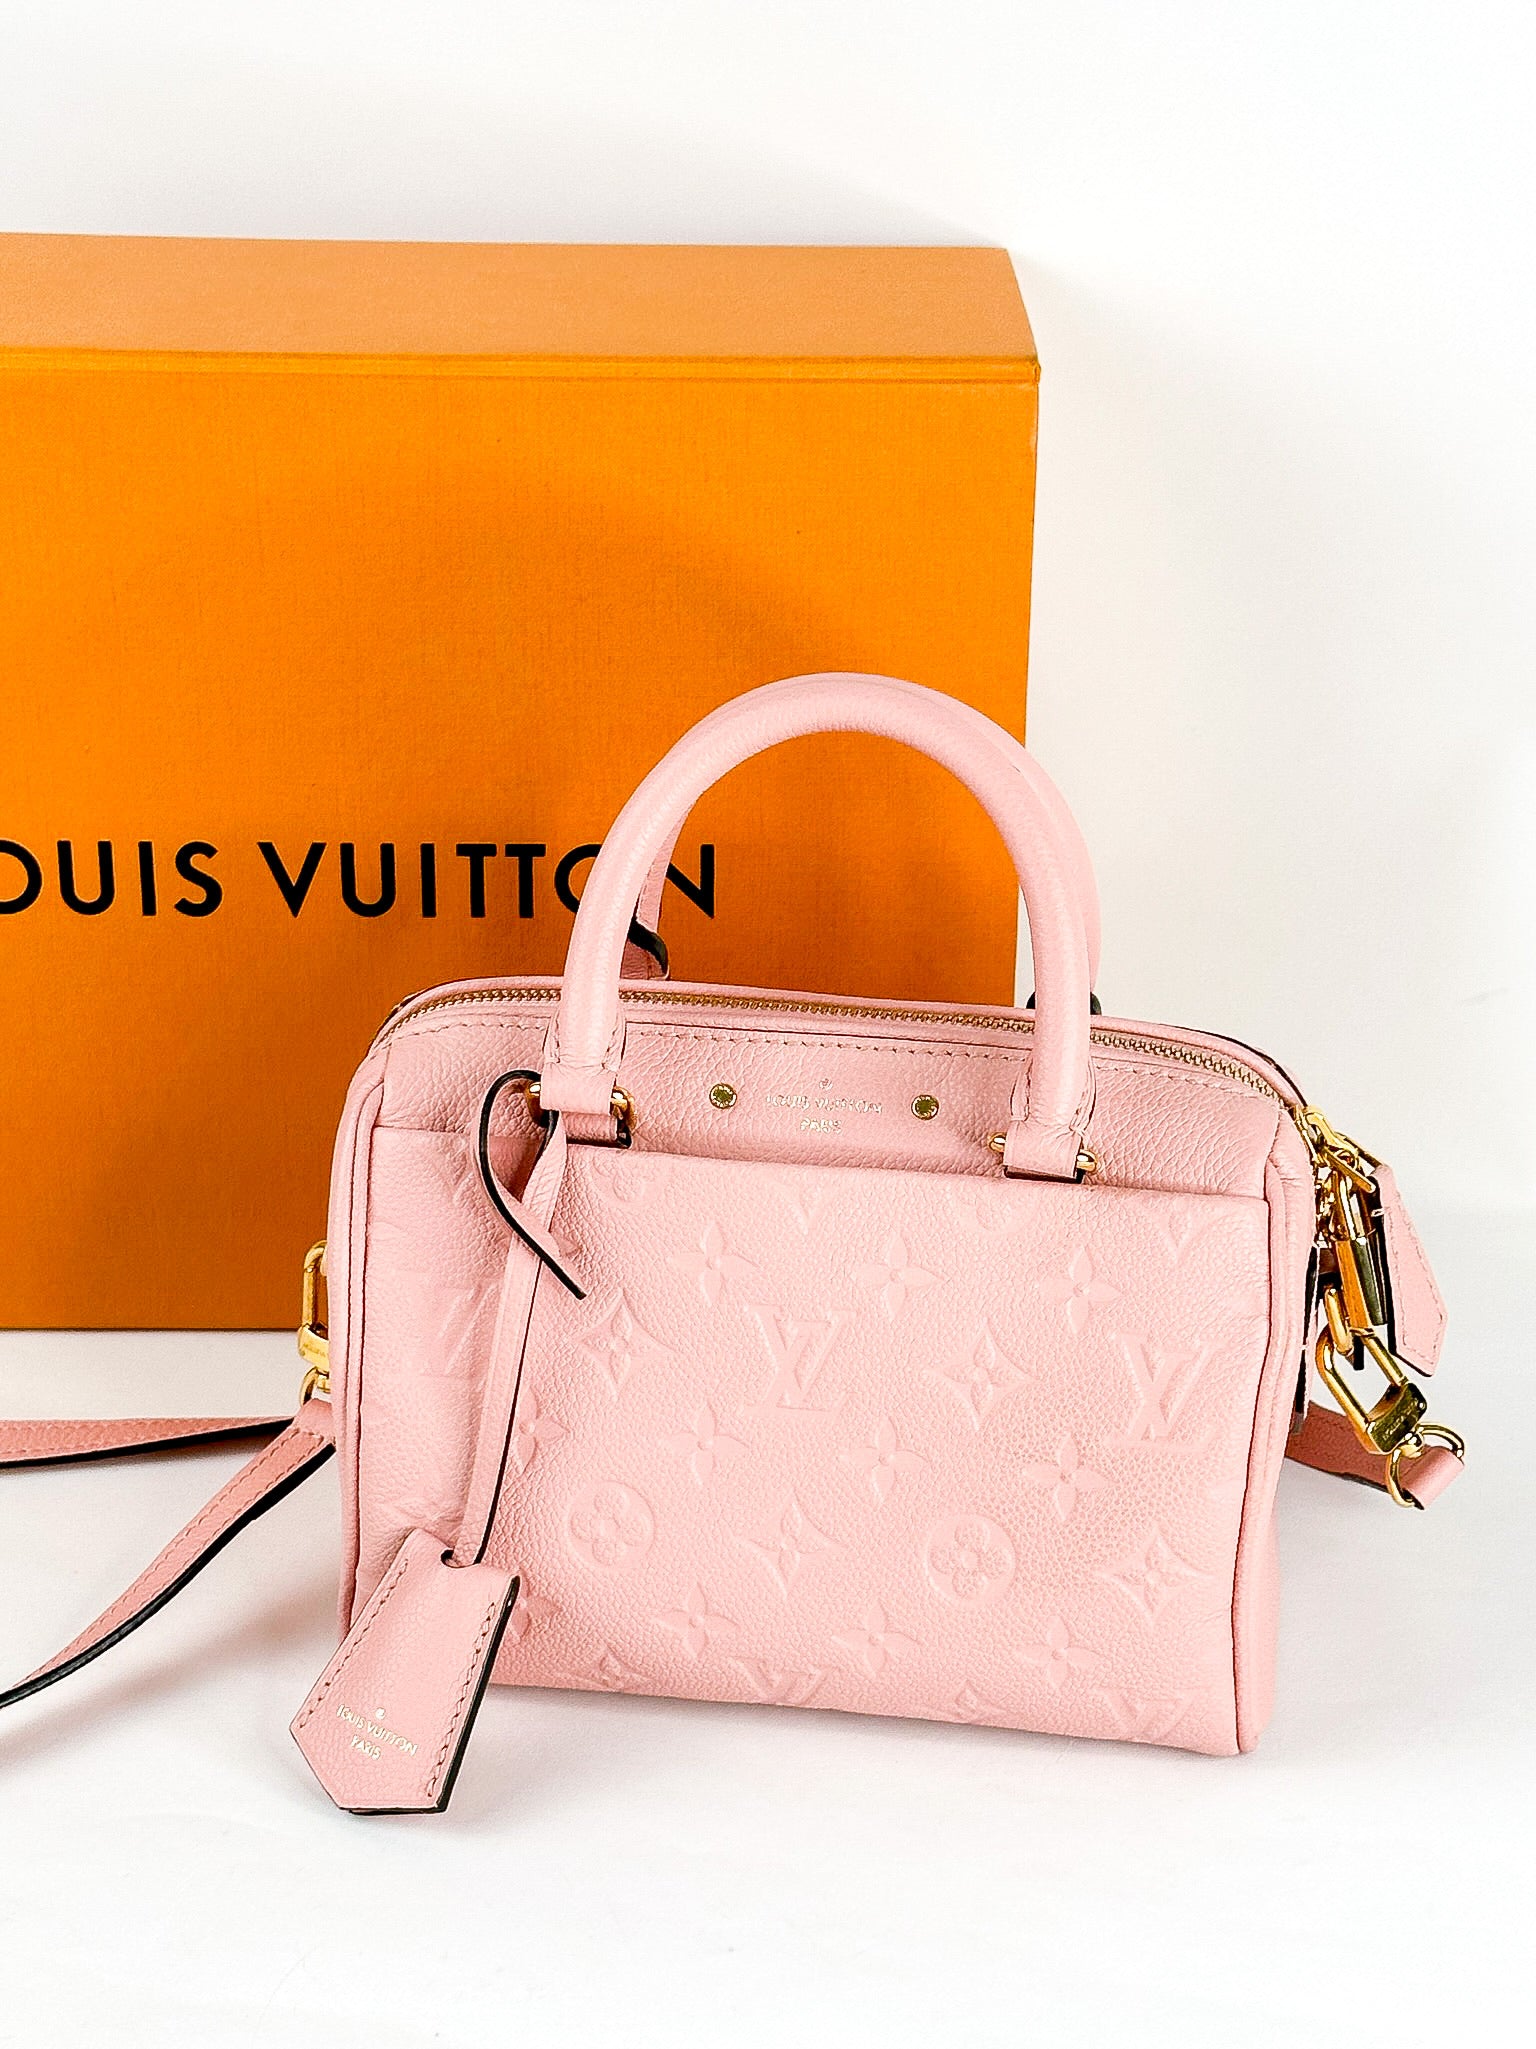 Louis Vuitton Pink Monogram Empreinte Speedy Bandoulière NM 20, myGemma, CH